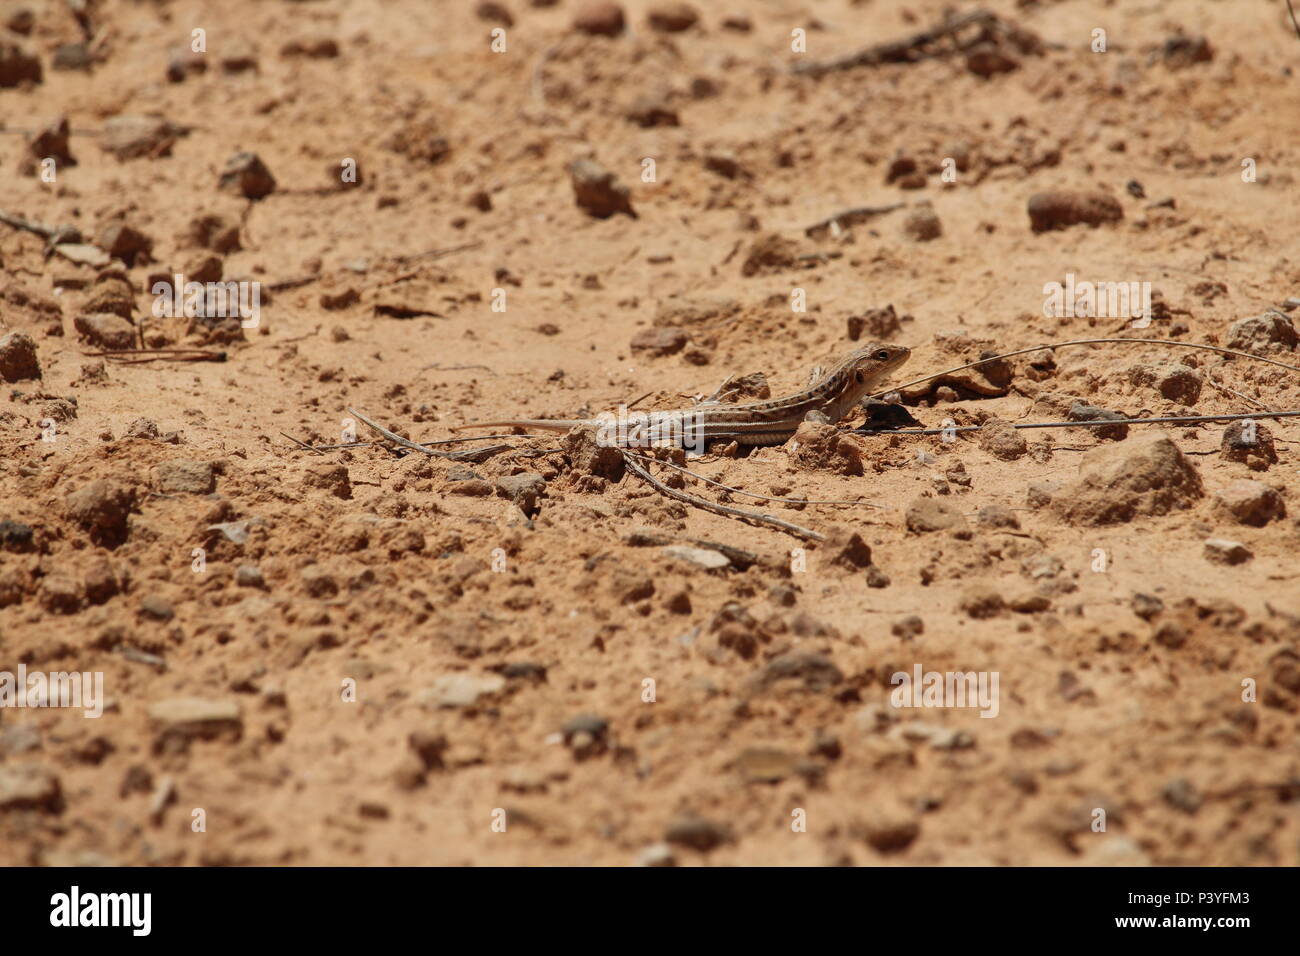 Fauna selvatica sulla Penisola Iberica, Spagna - Acanthodactylus erythrurus, spinoso footed lizard guizzanti per rifugio. Estate 2018. Foto Stock